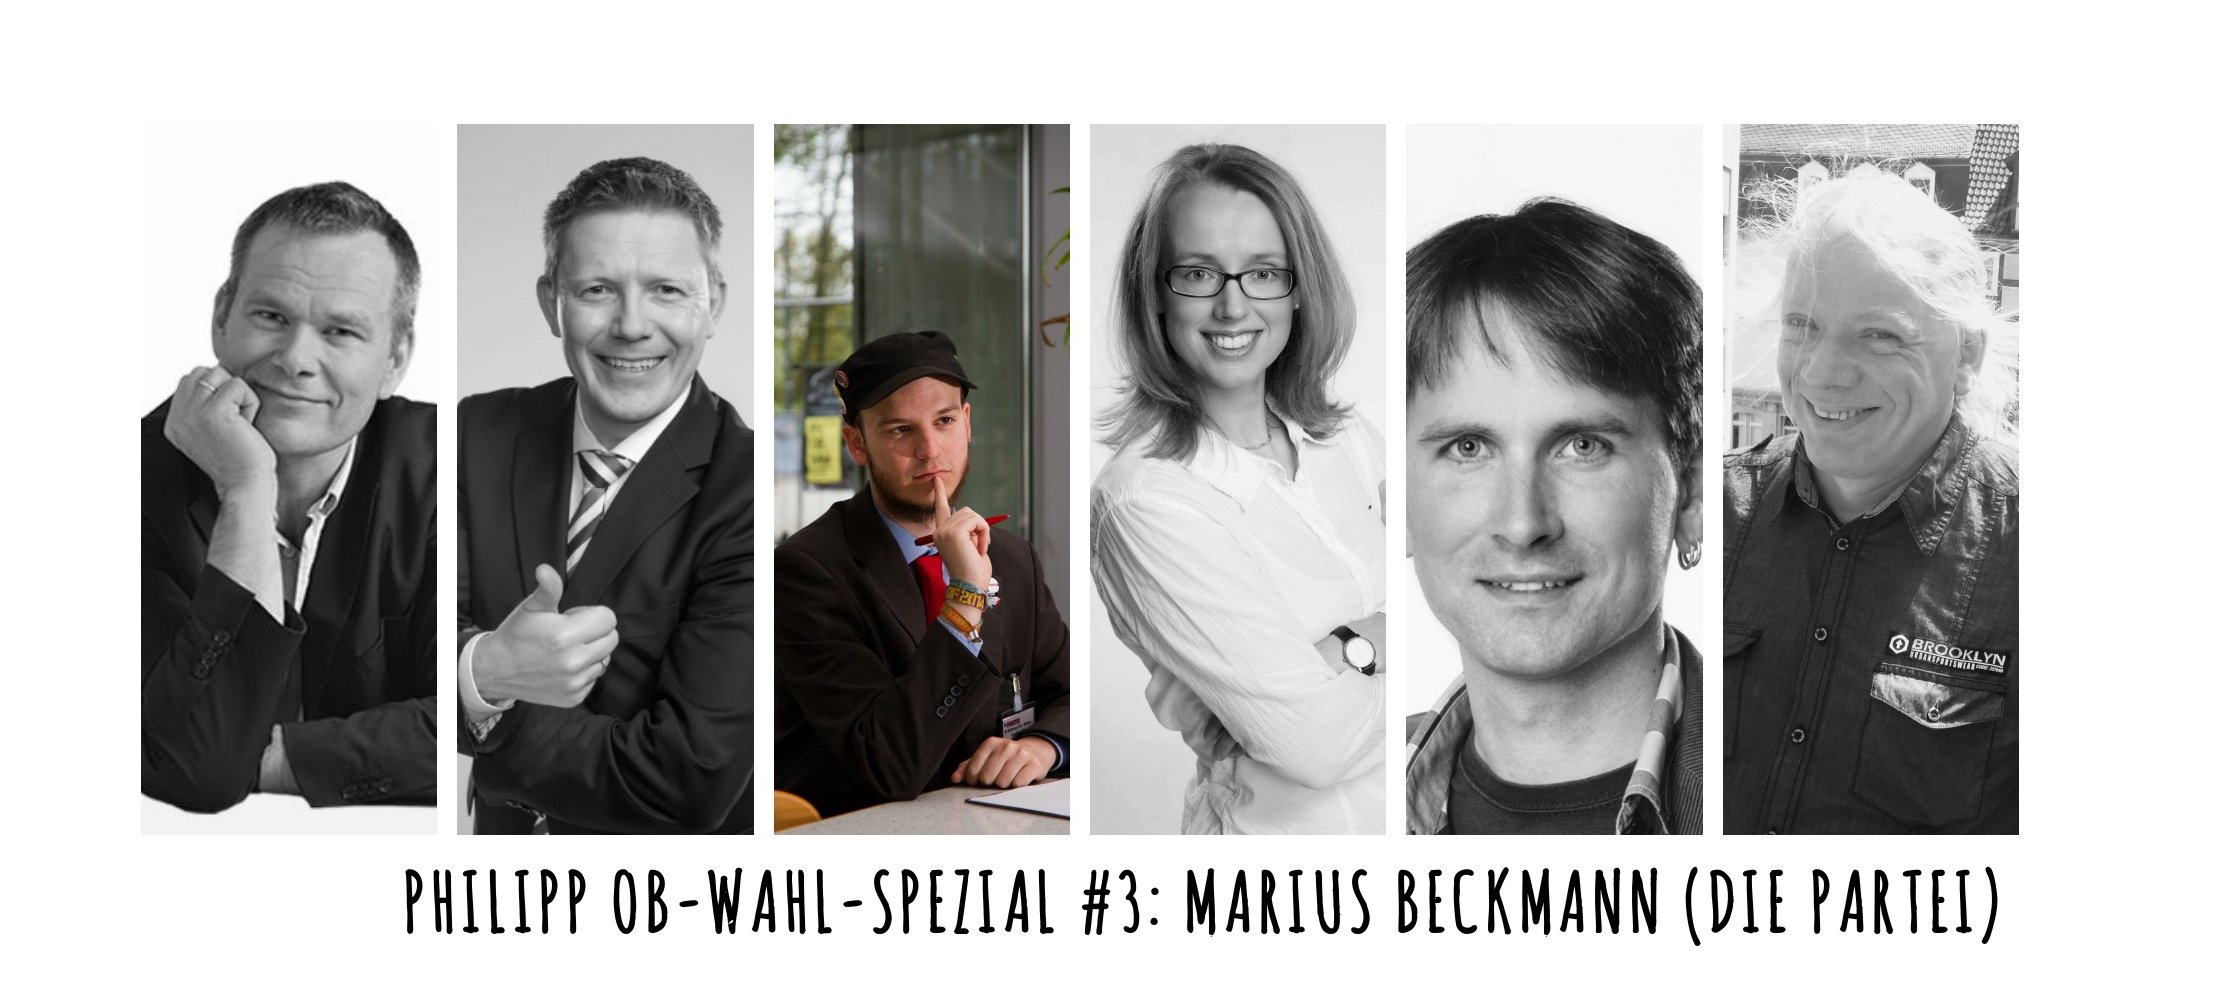 OB-Wahl-2015-Spezial #3: Marius Beckmann (Die Partei)